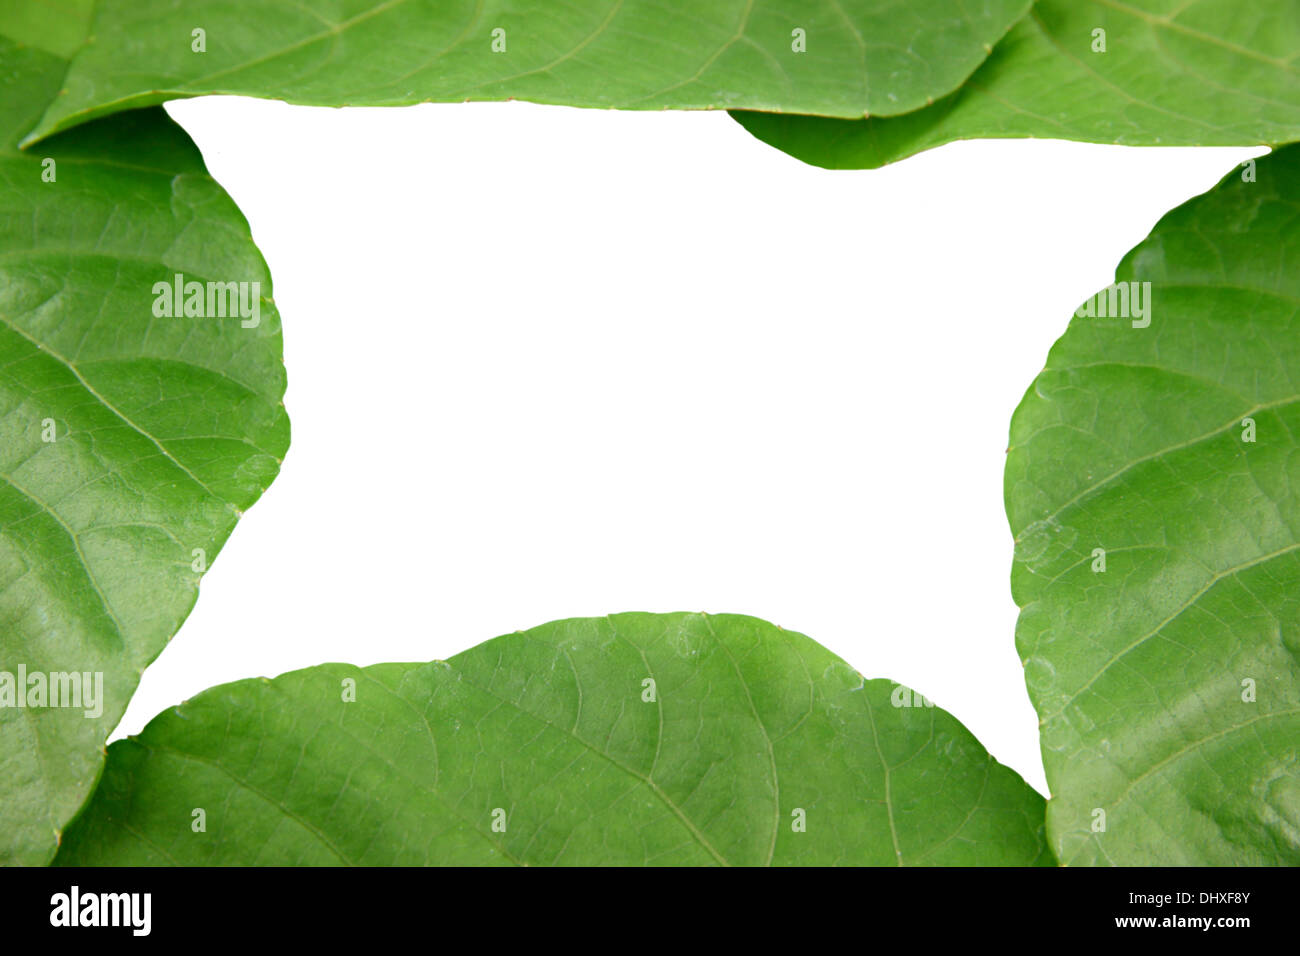 Las hojas verdes con forma de corazón sobre fondo blanco. Foto de stock